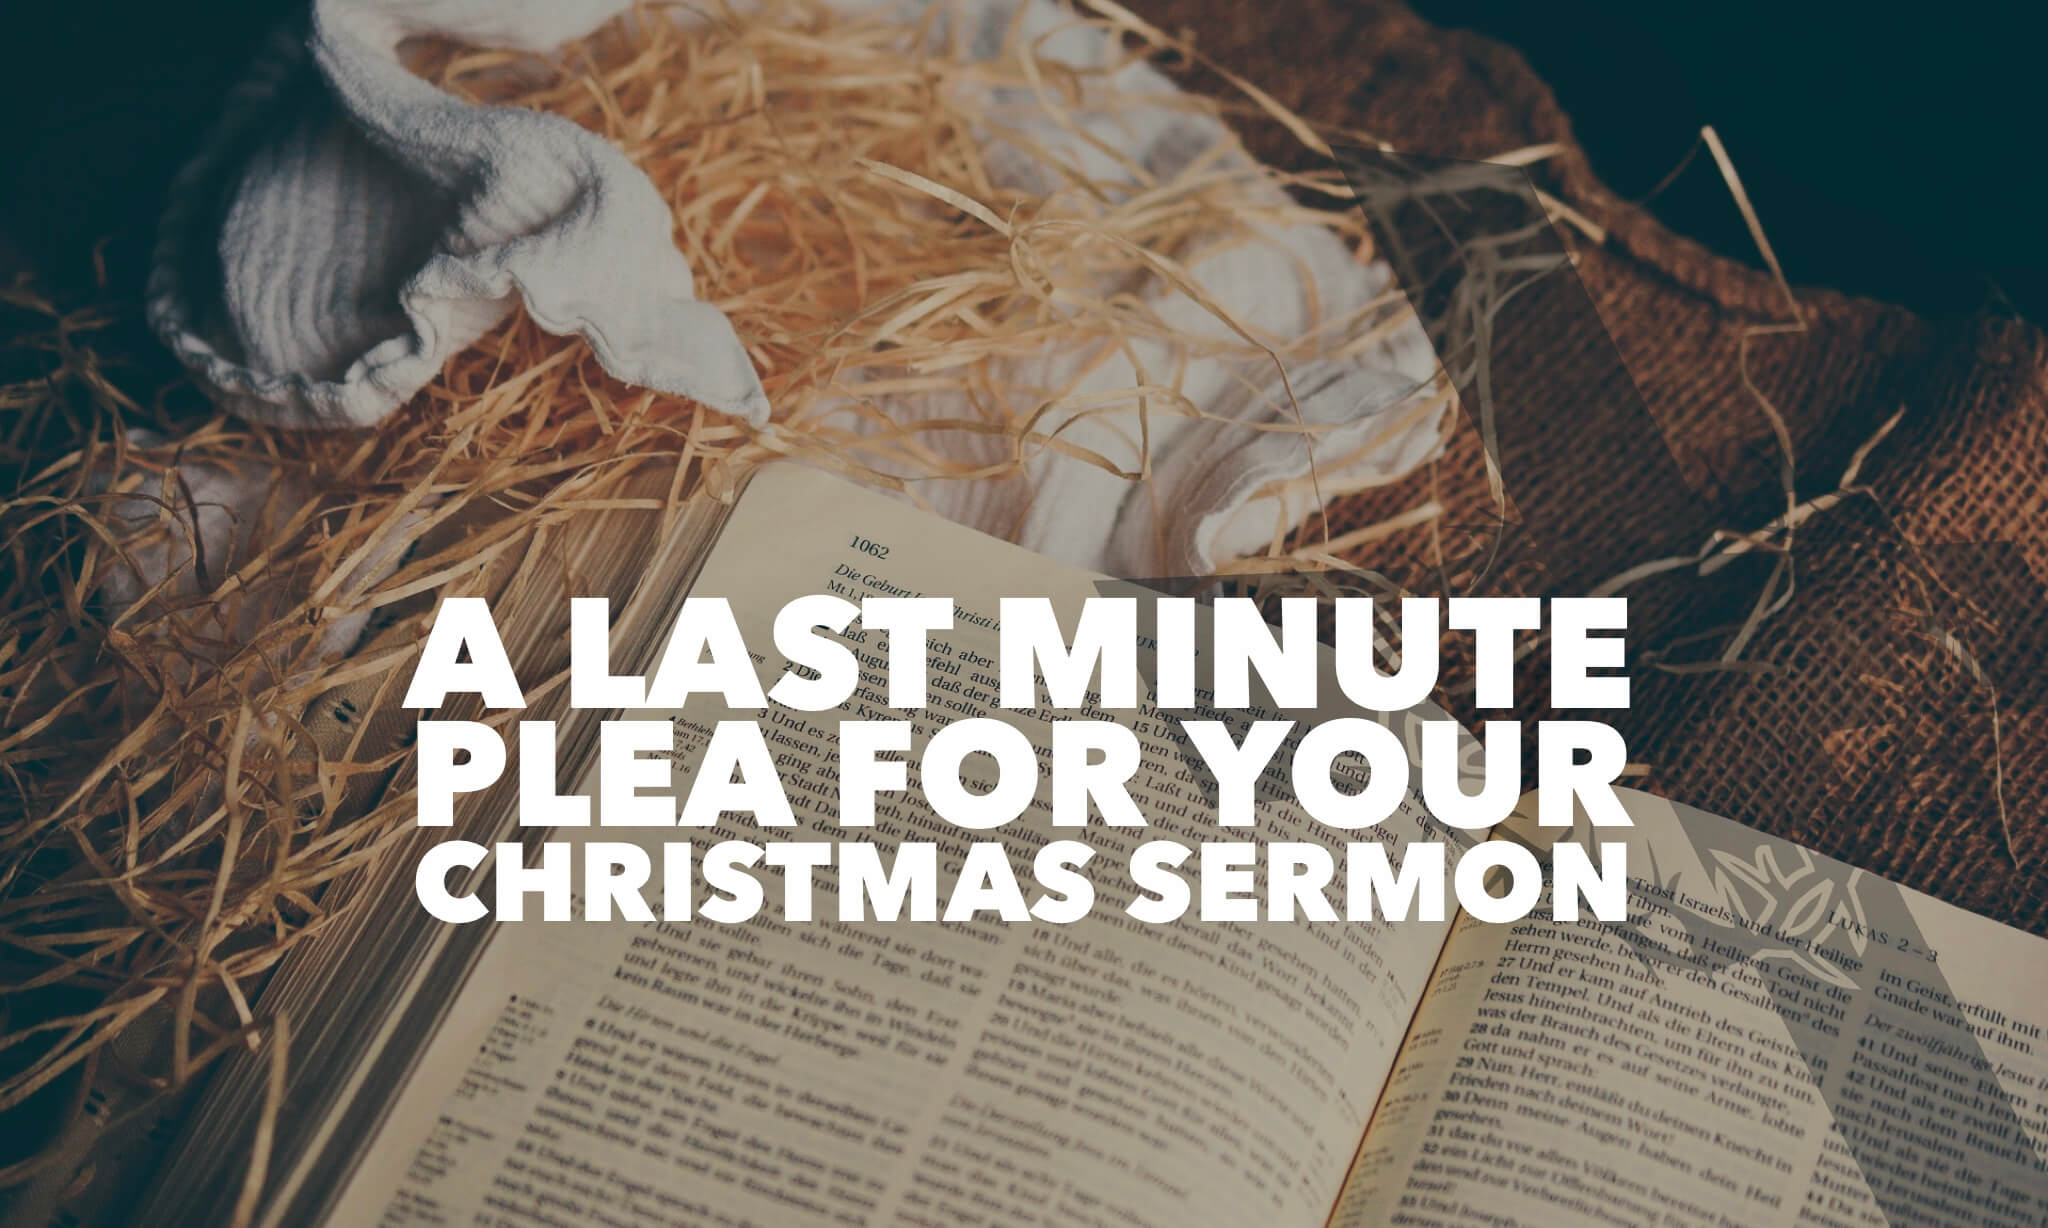 A Last Minute Plea for Your Christmas Srrmon